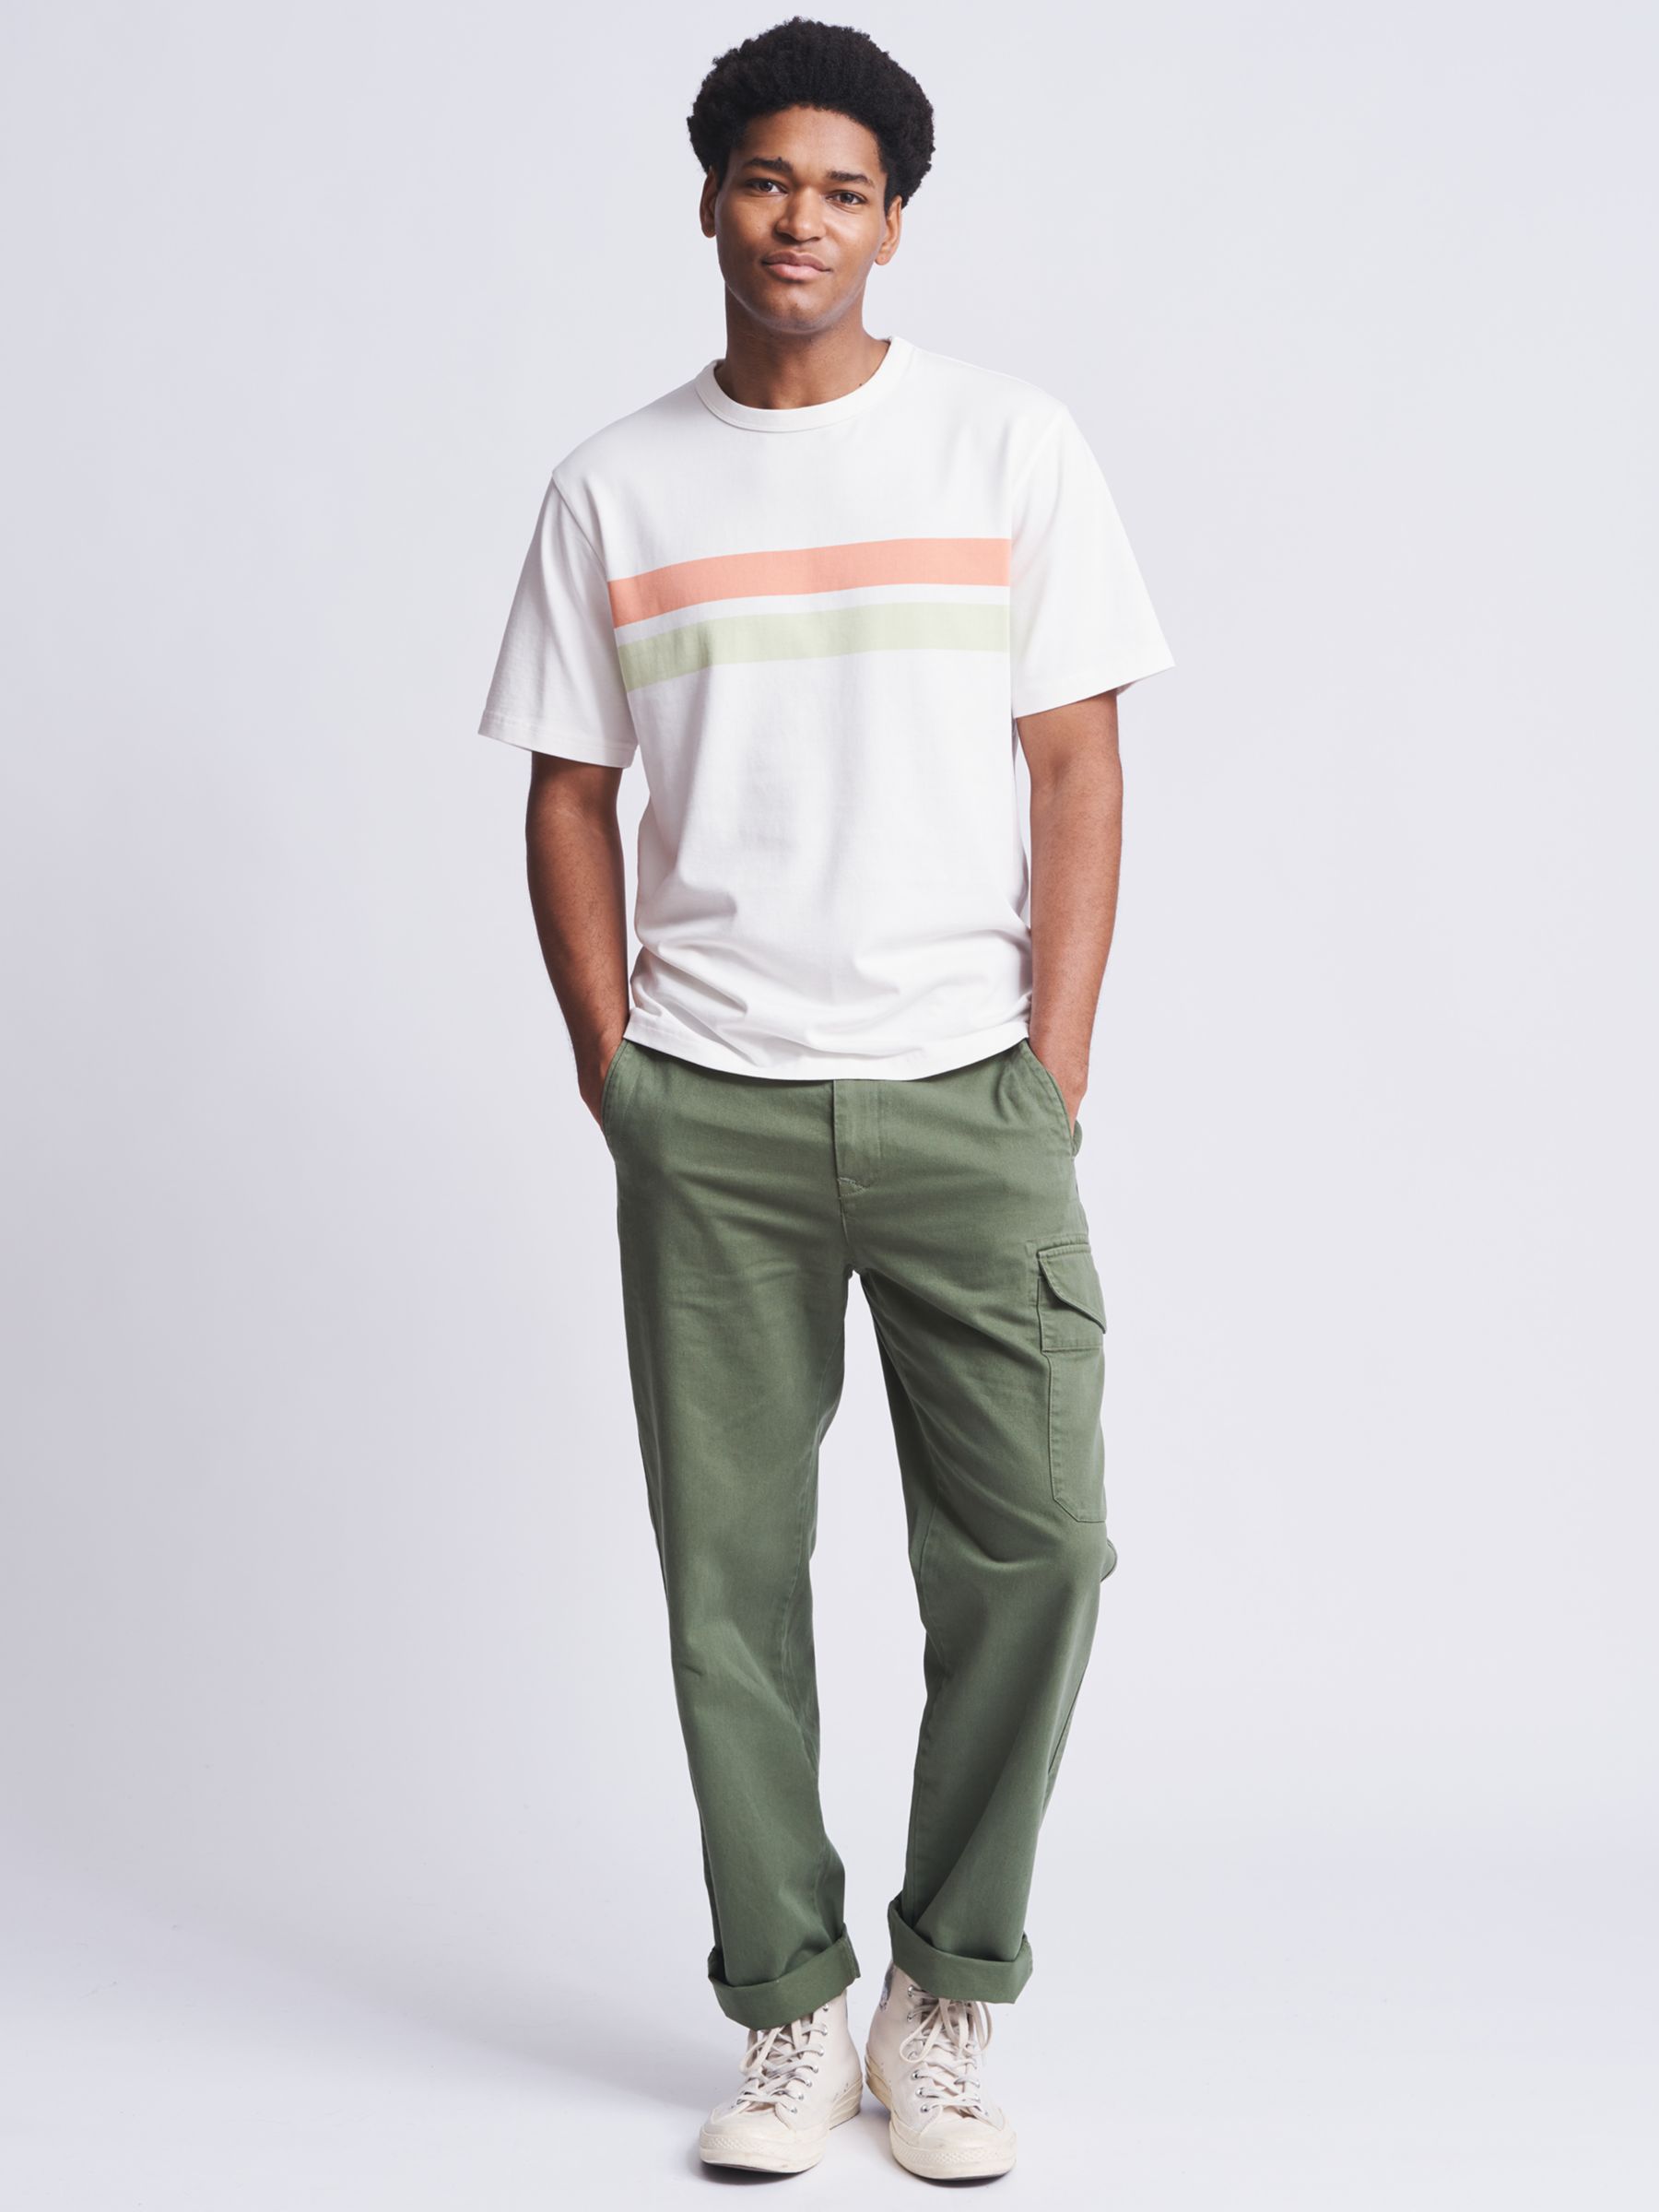 Aubin Santon Relaxed Cotton T-Shirt, Ecru Stripe, L